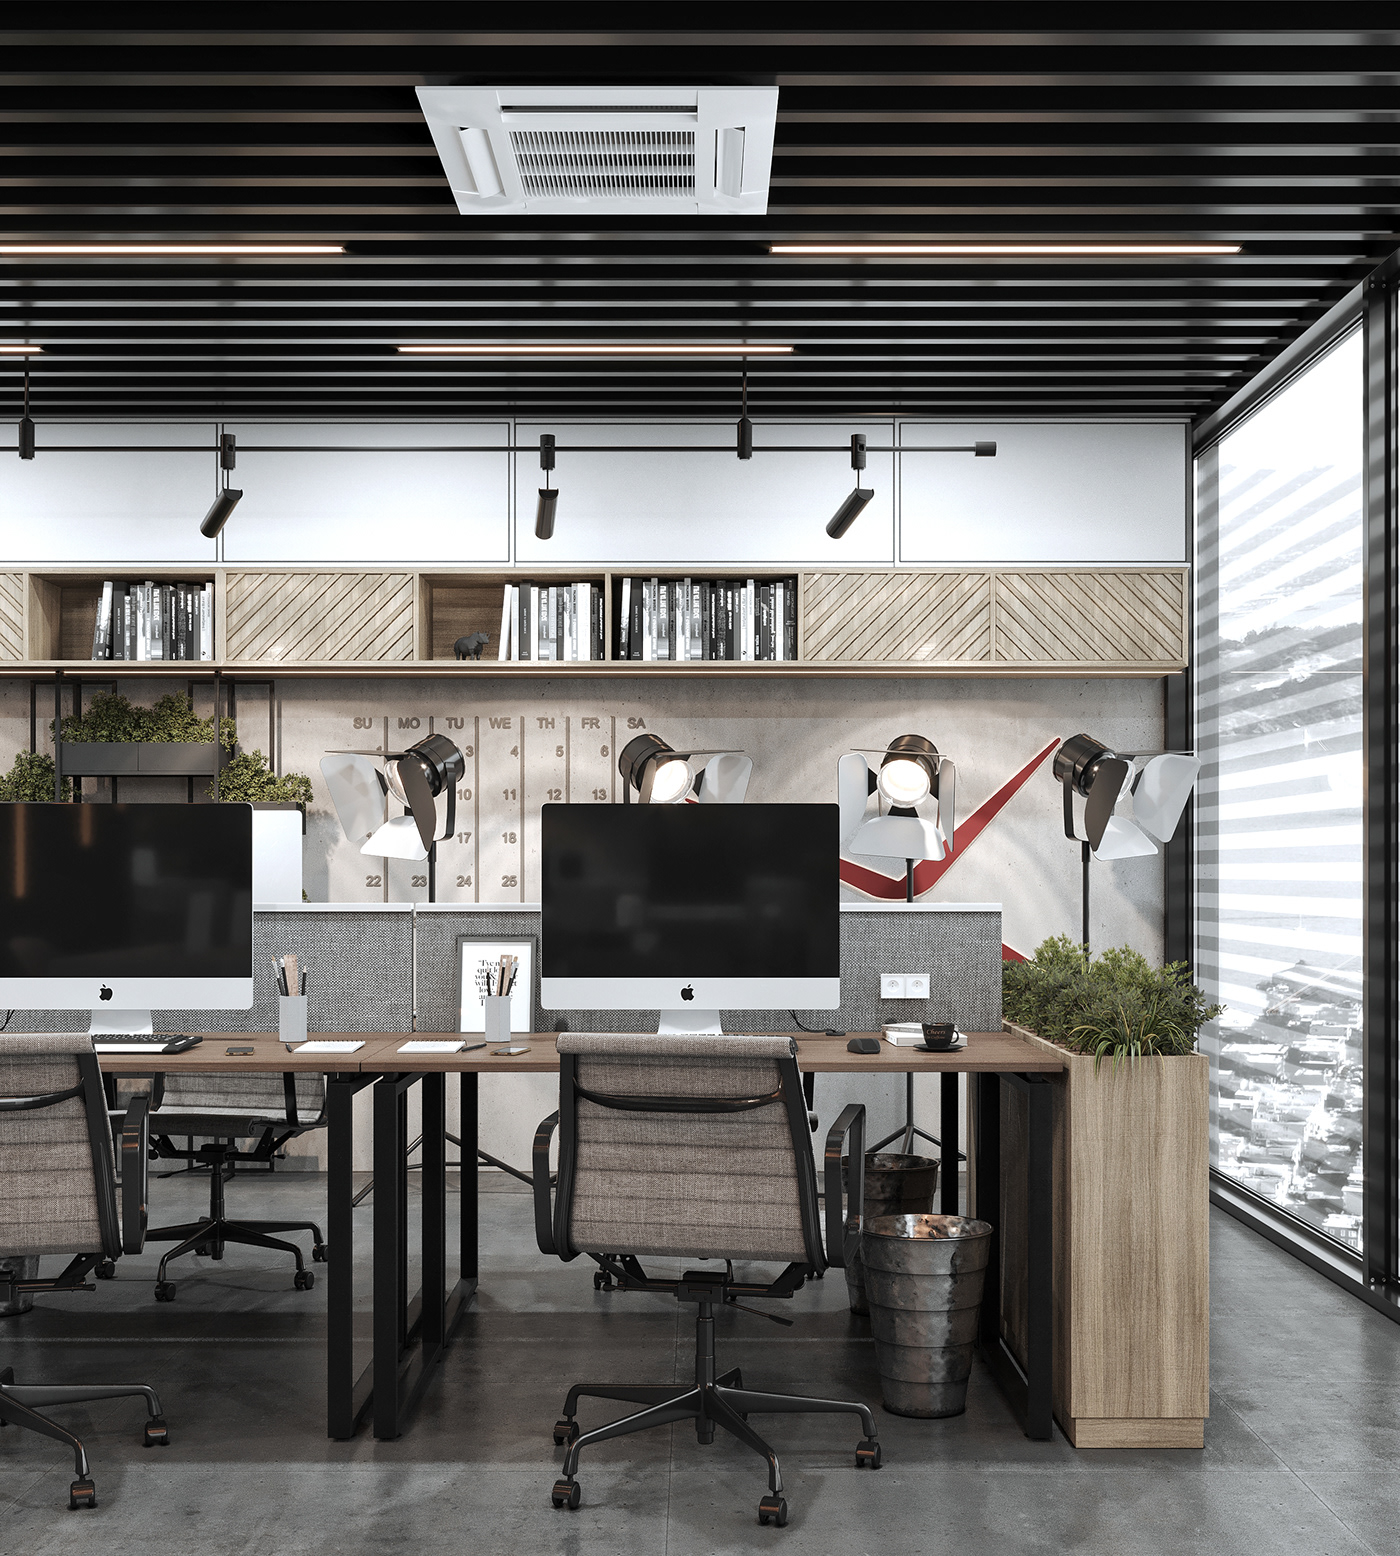 3ds max corona renderer dark design industrial Interior Kuwait modern Office